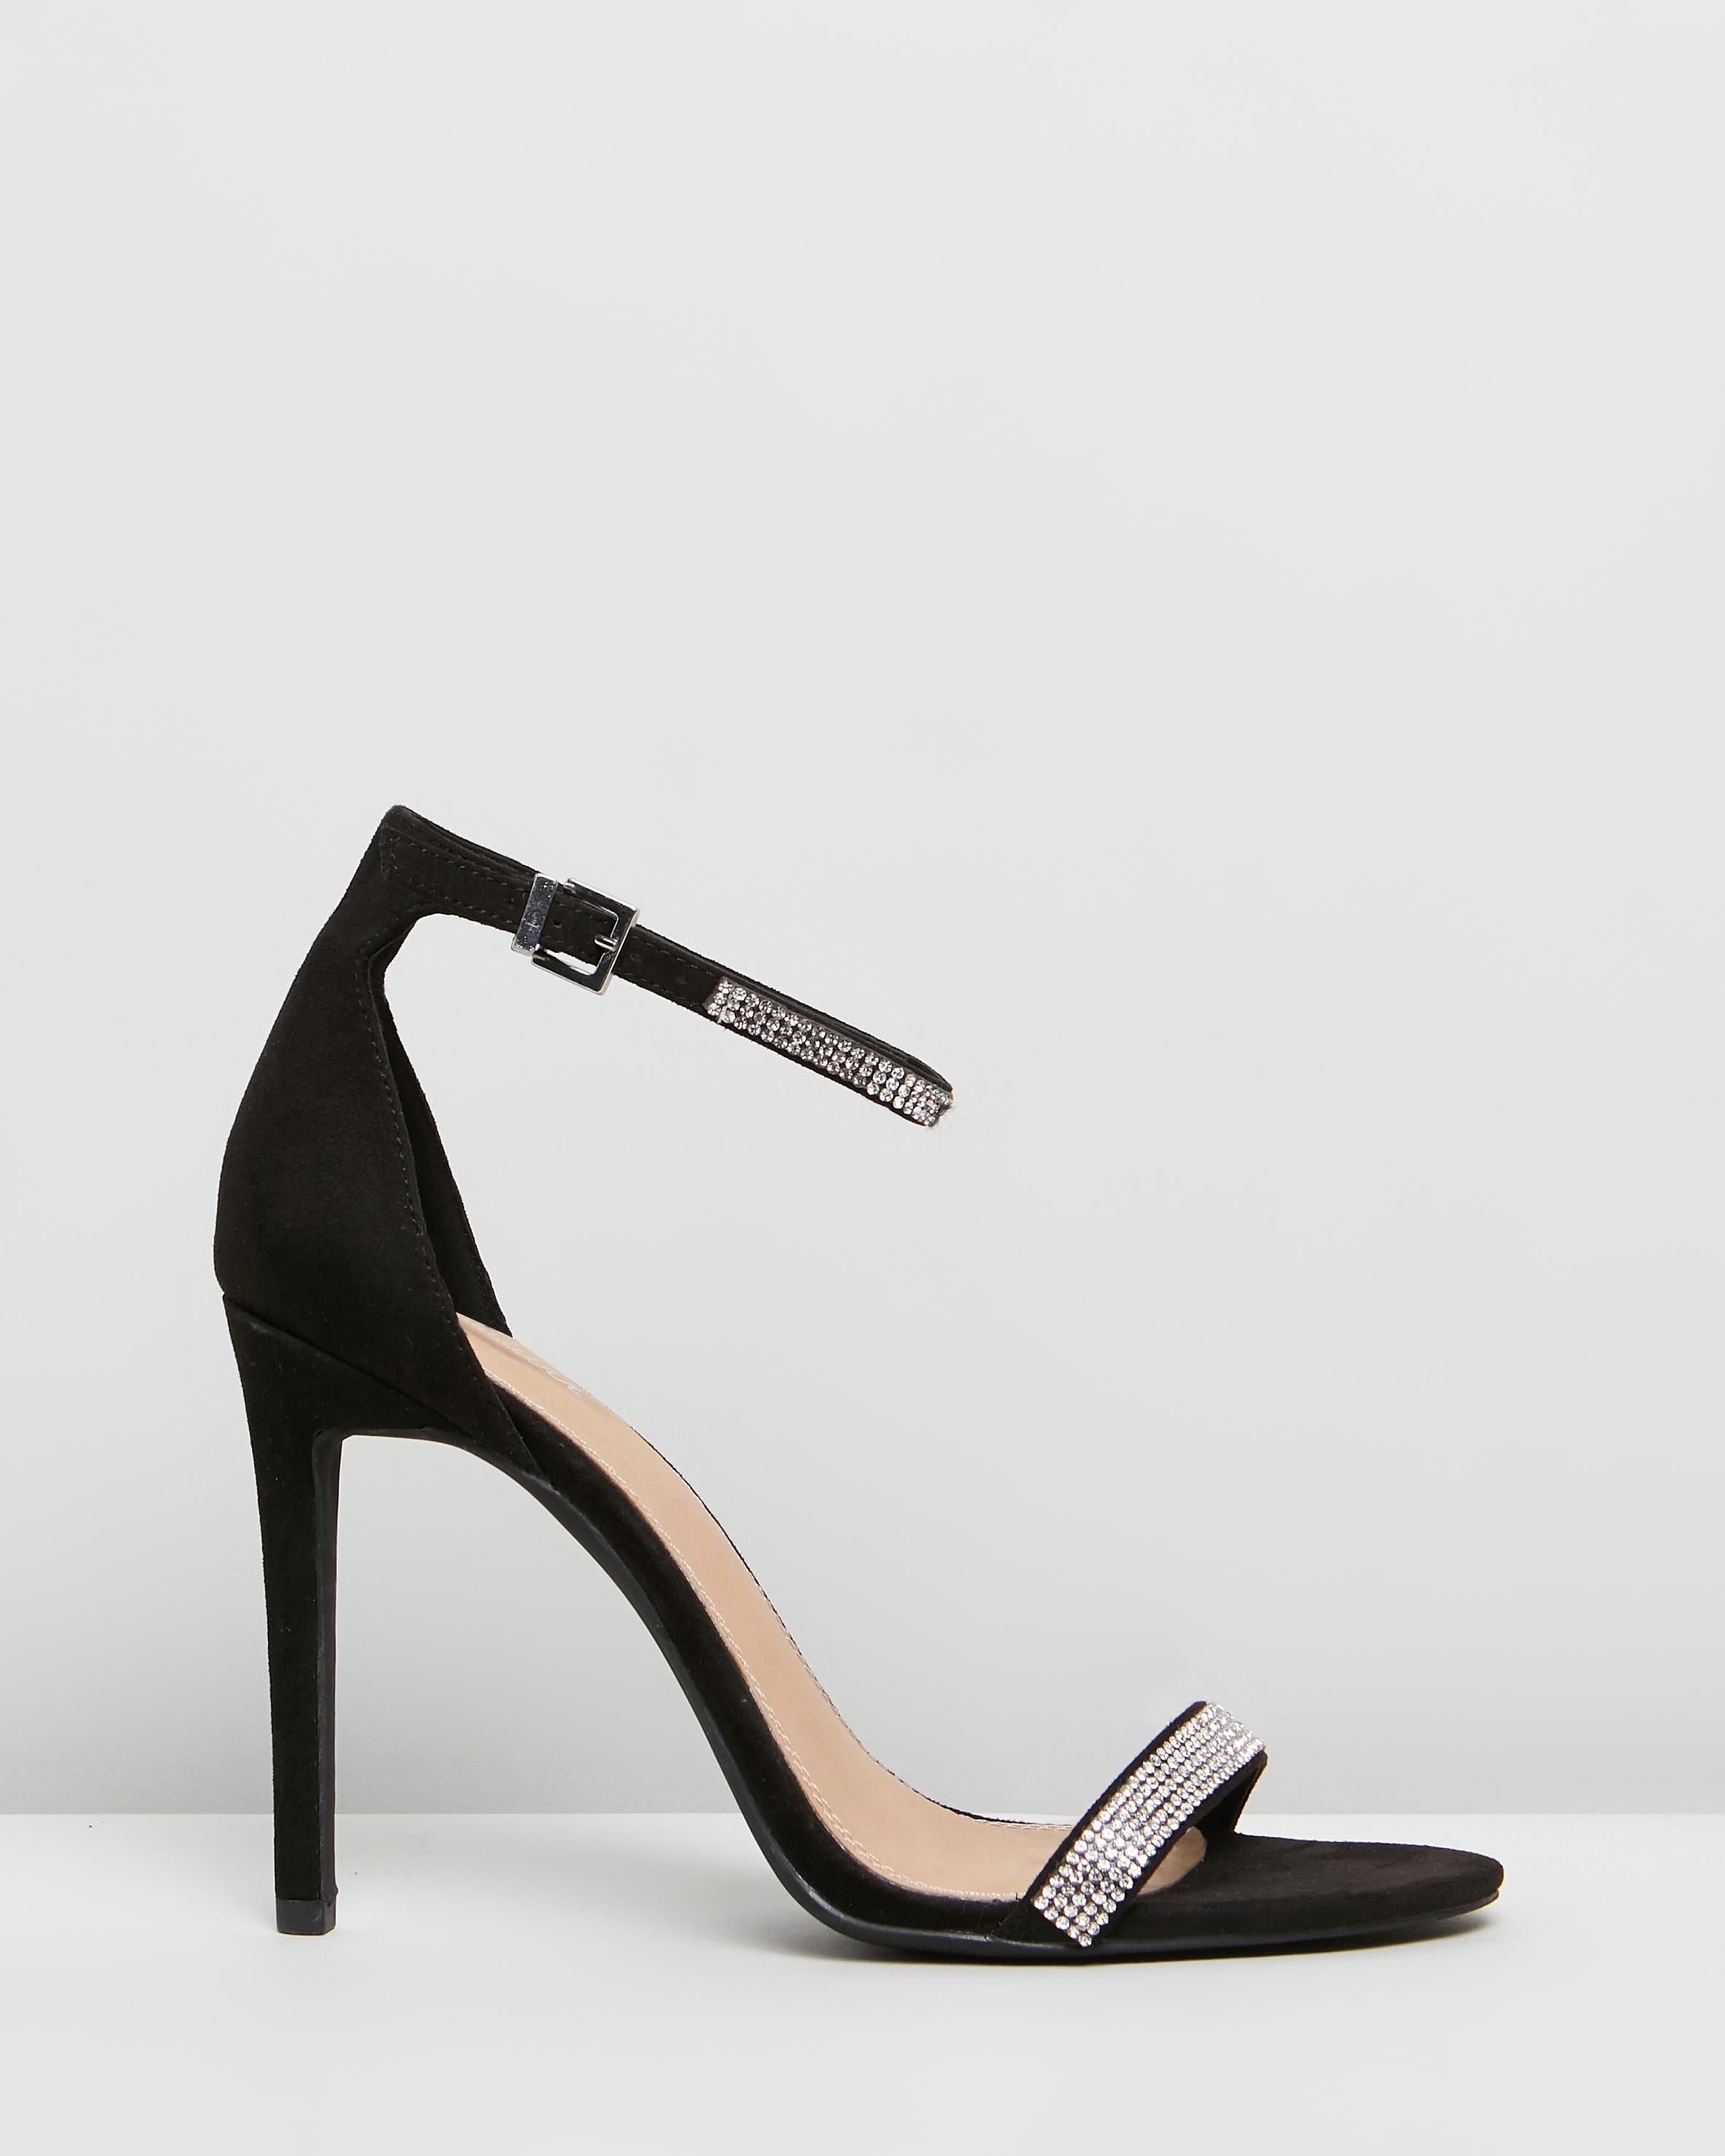 Perla Heels Black Microsuede & Diamante by Spurr | ShoeSales